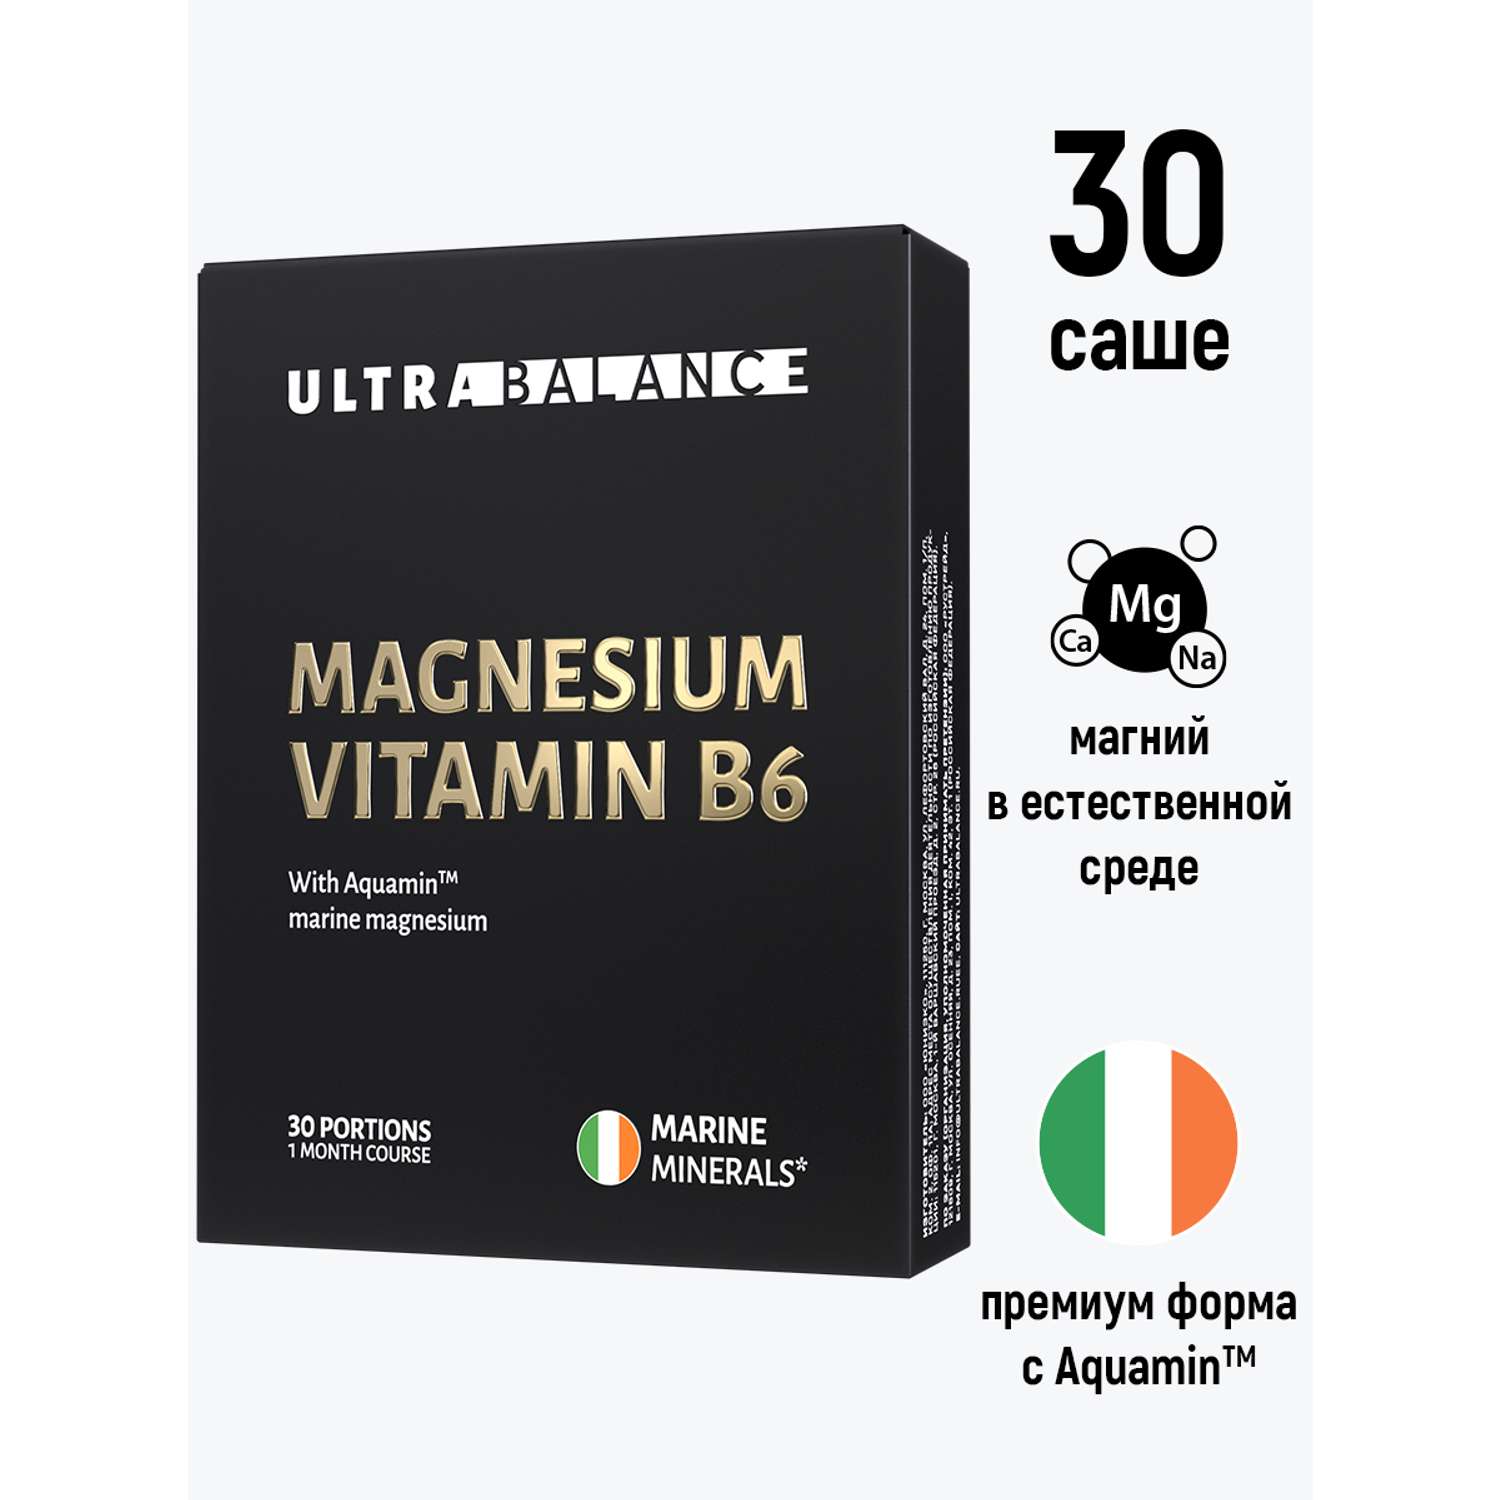 Магний витамин в6 комплекс UltraBalance Magnesium Vitamin B6 Premium успокоительное поддержка нервной системы 60 саше - фото 2